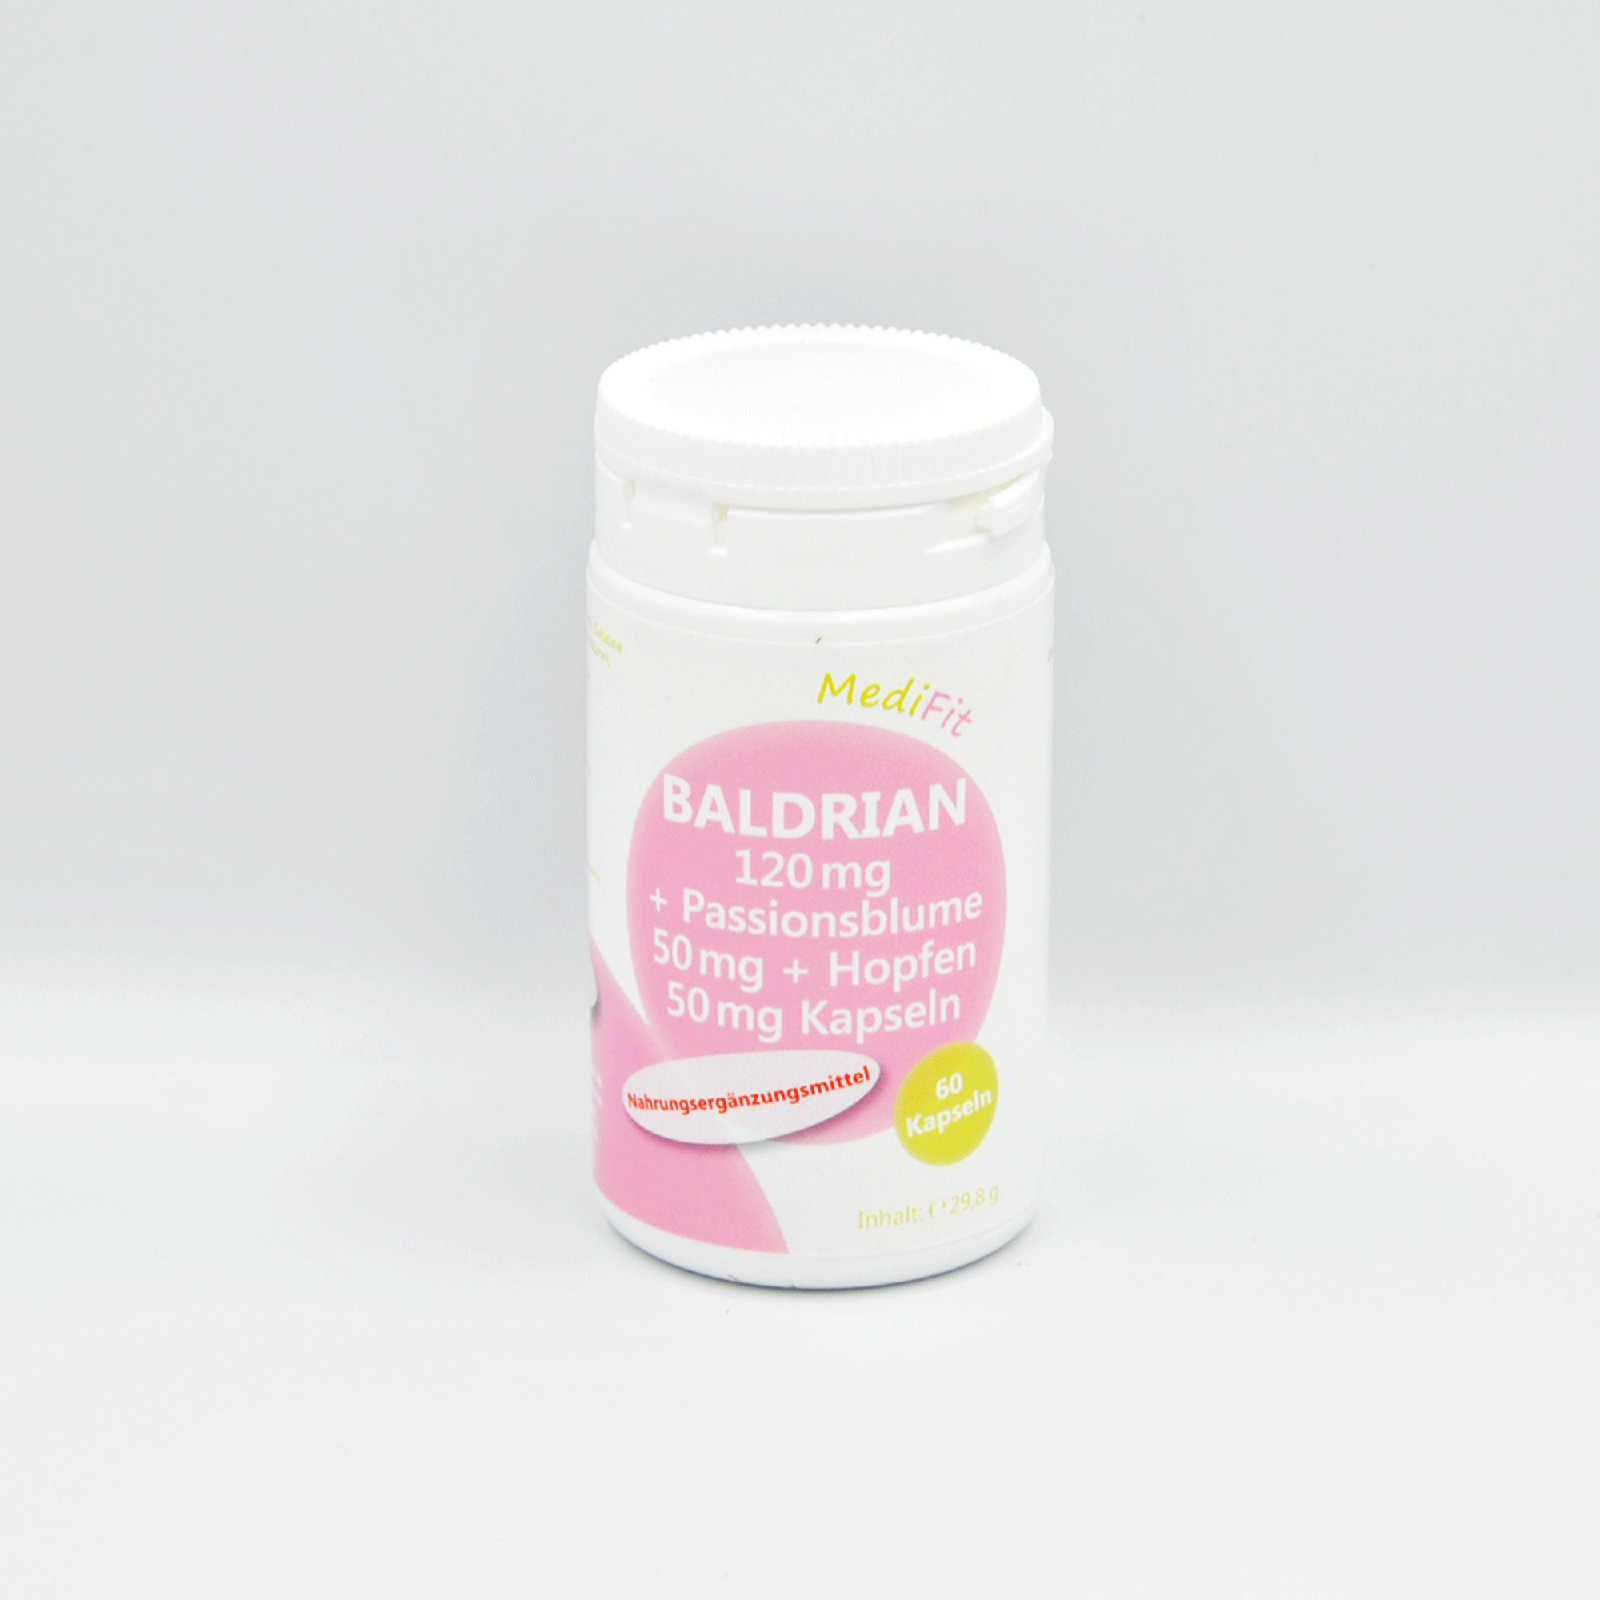 Baldrian 120 mg + Passionsblume 50 mg + Hopfen 50 mg Kapseln